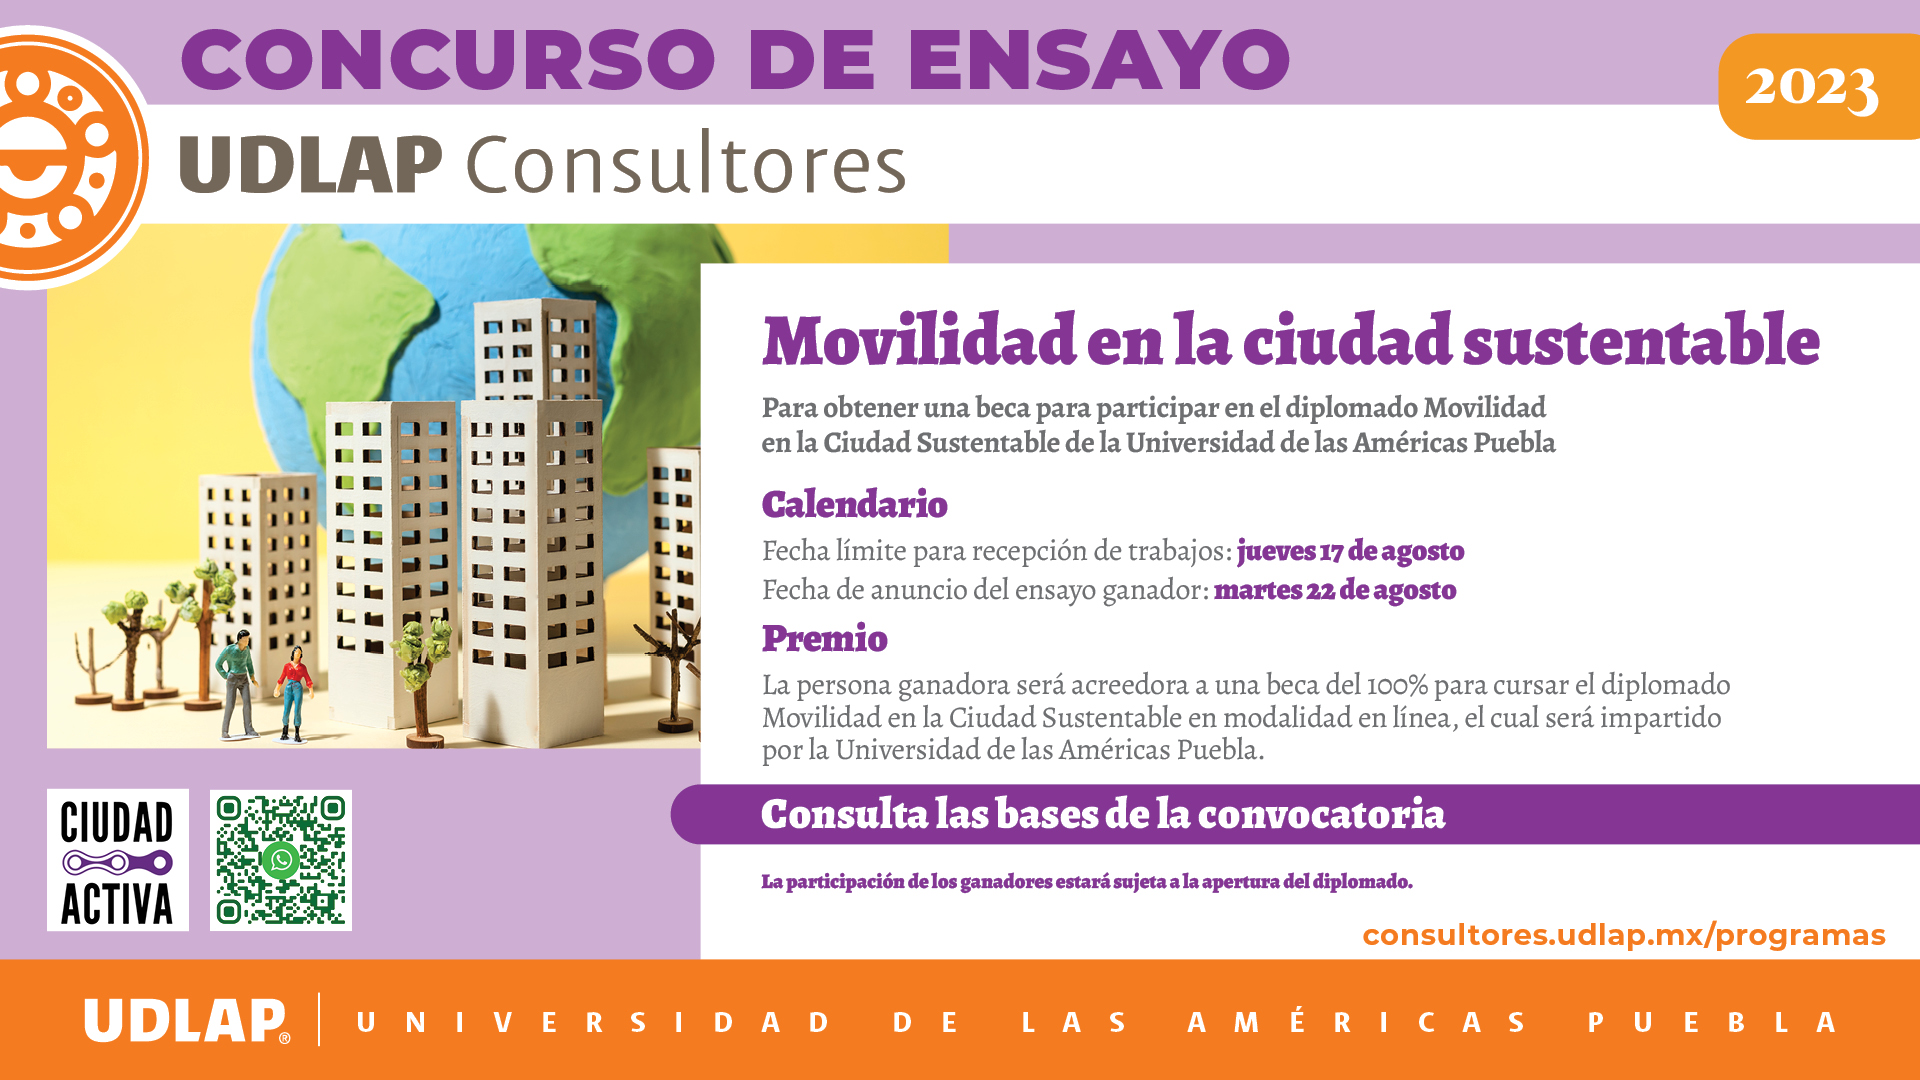 Concurso-Movilidad-ciudad-sustentable-UDLAP